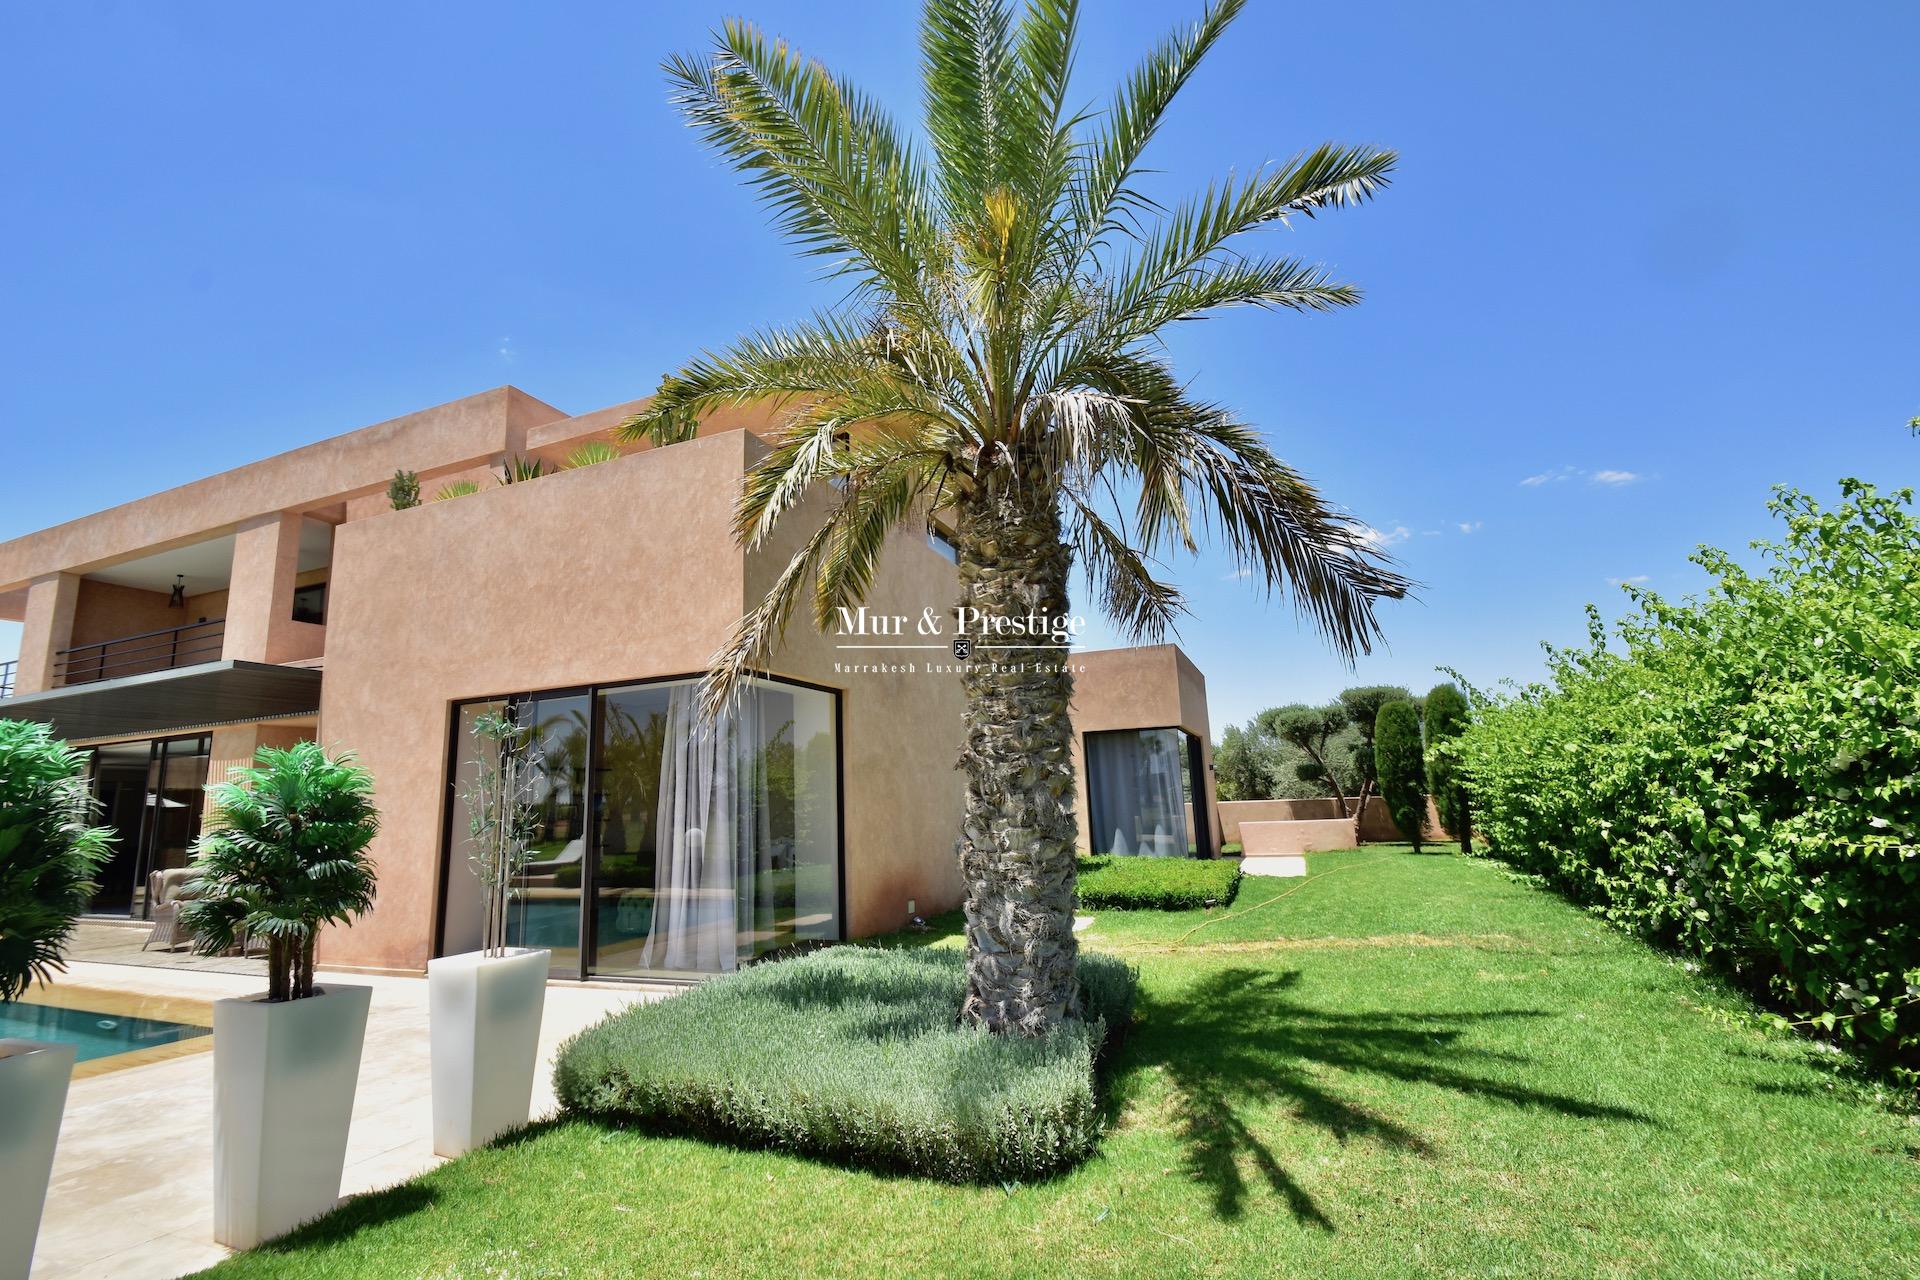 Maison moderne en vente sur le golf de Amelkis à Marrakech